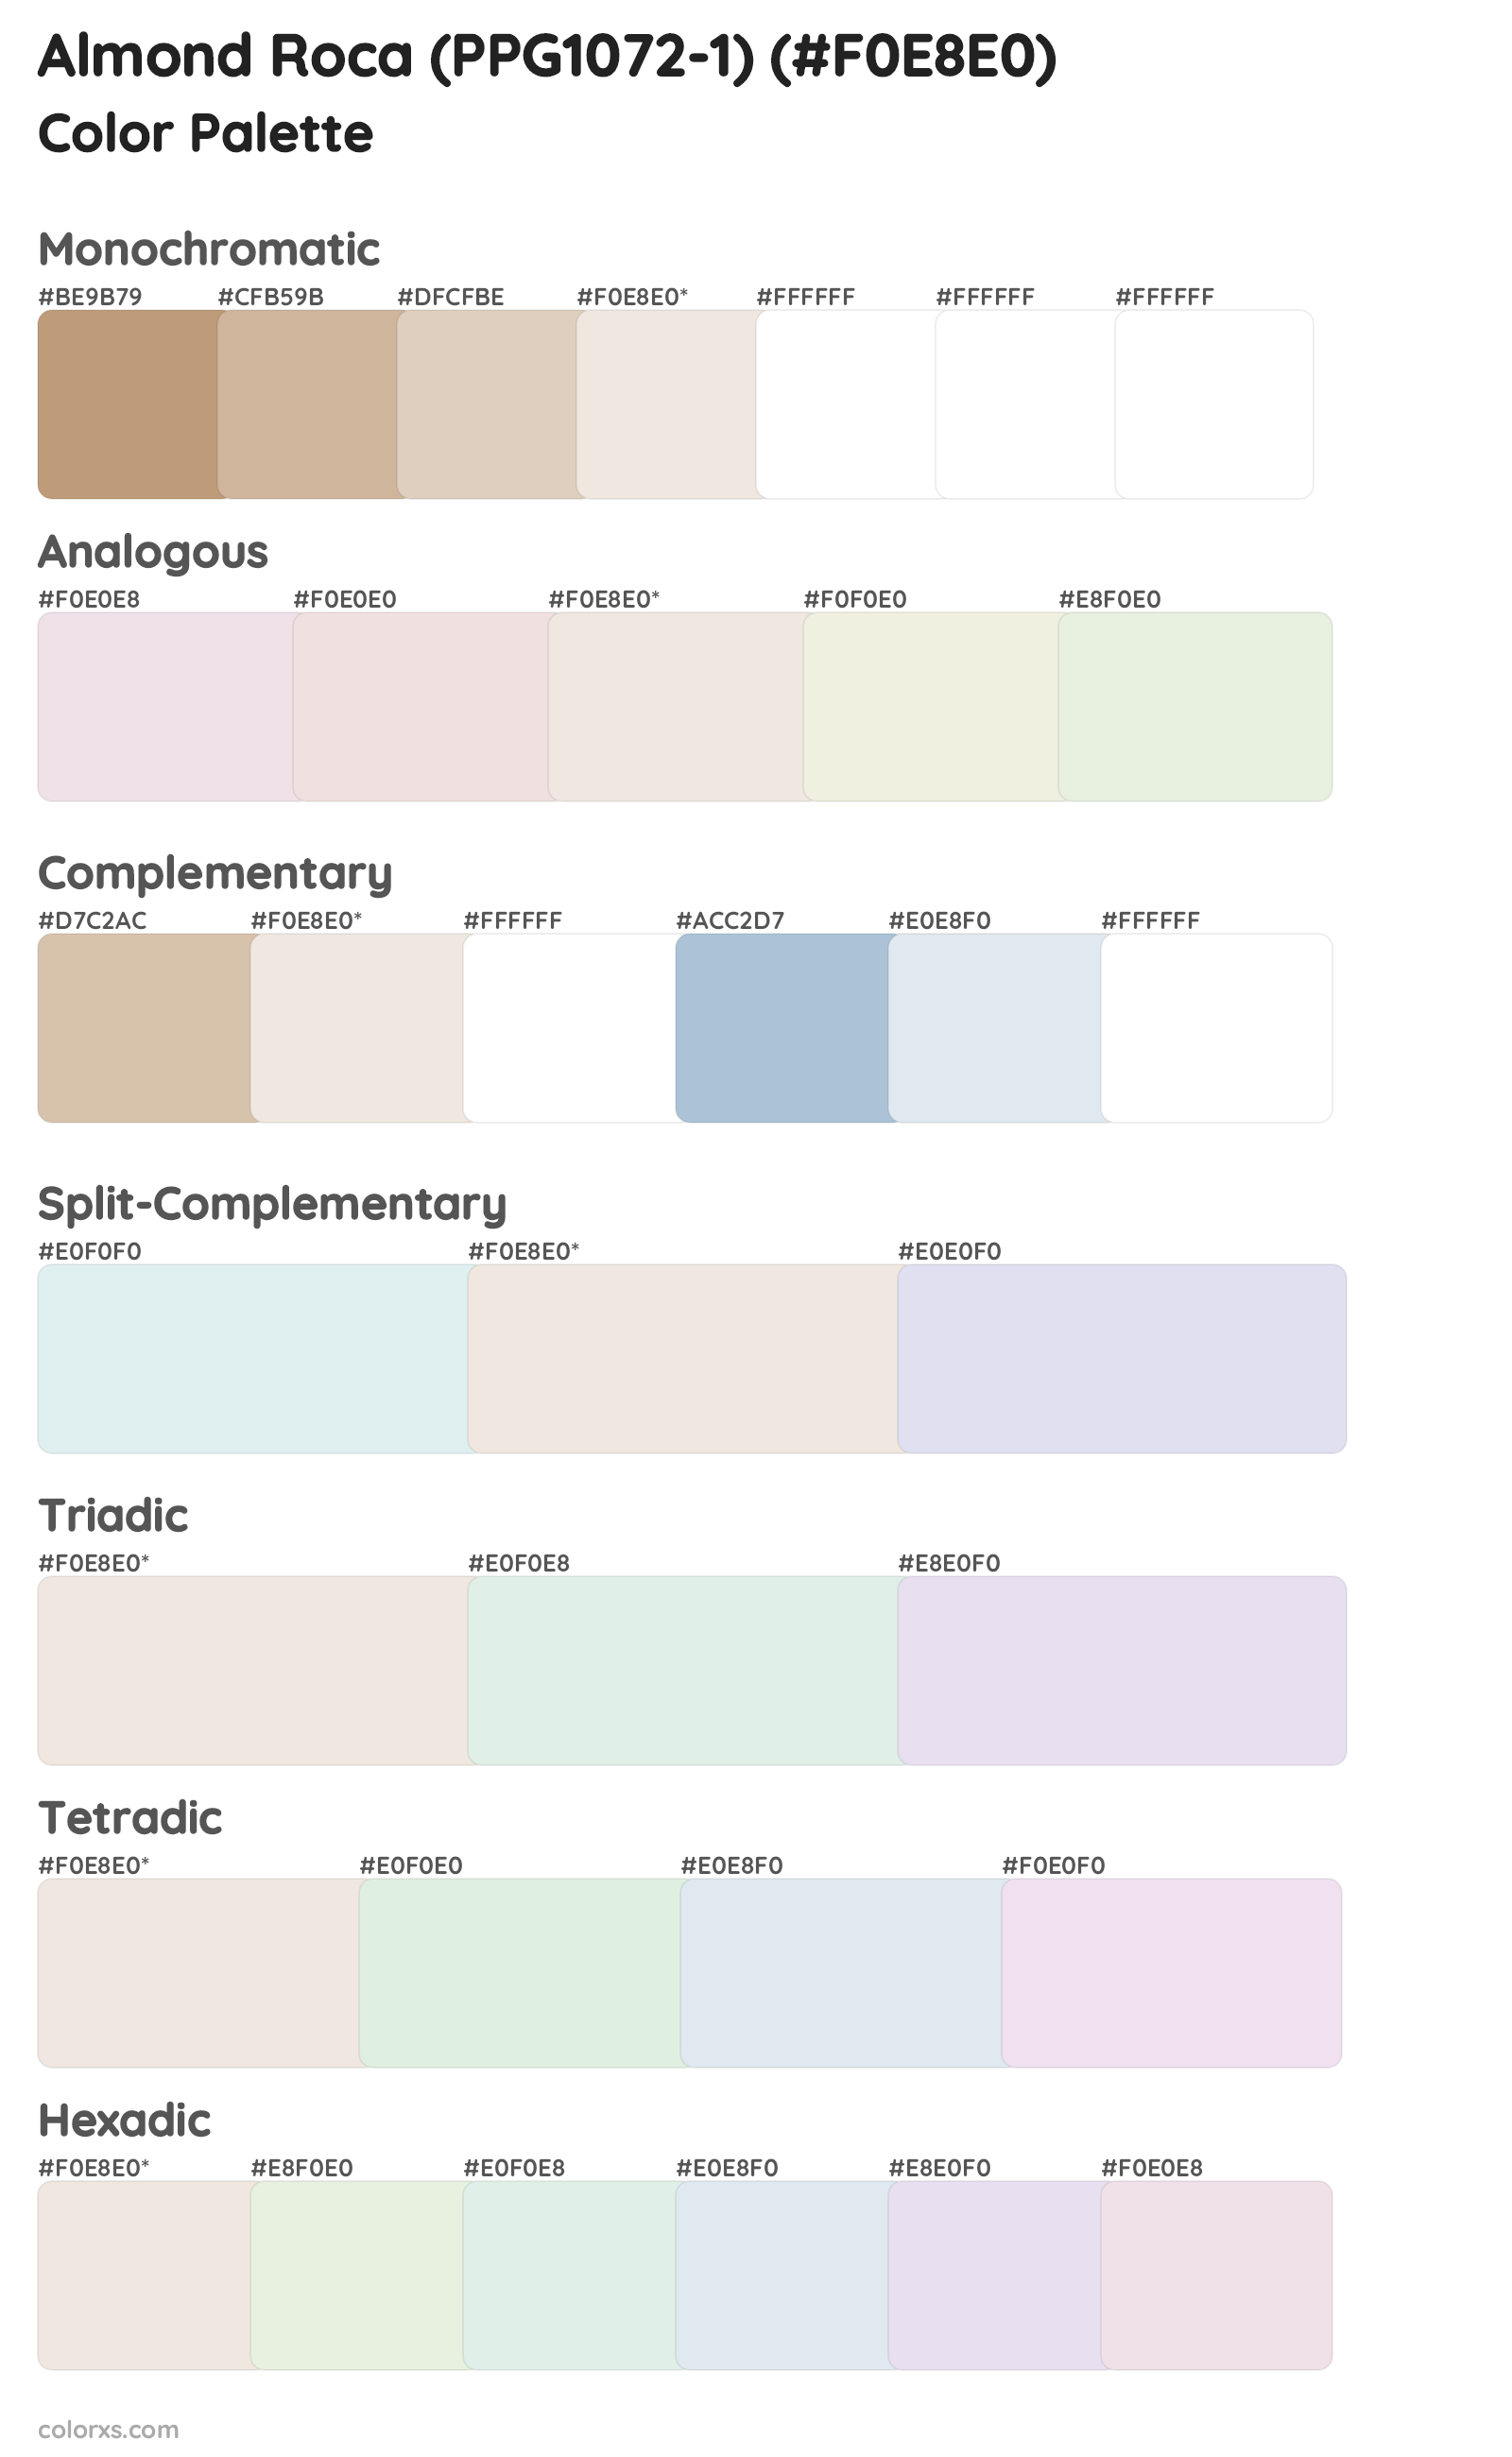 Almond Roca (PPG1072-1) Color Scheme Palettes